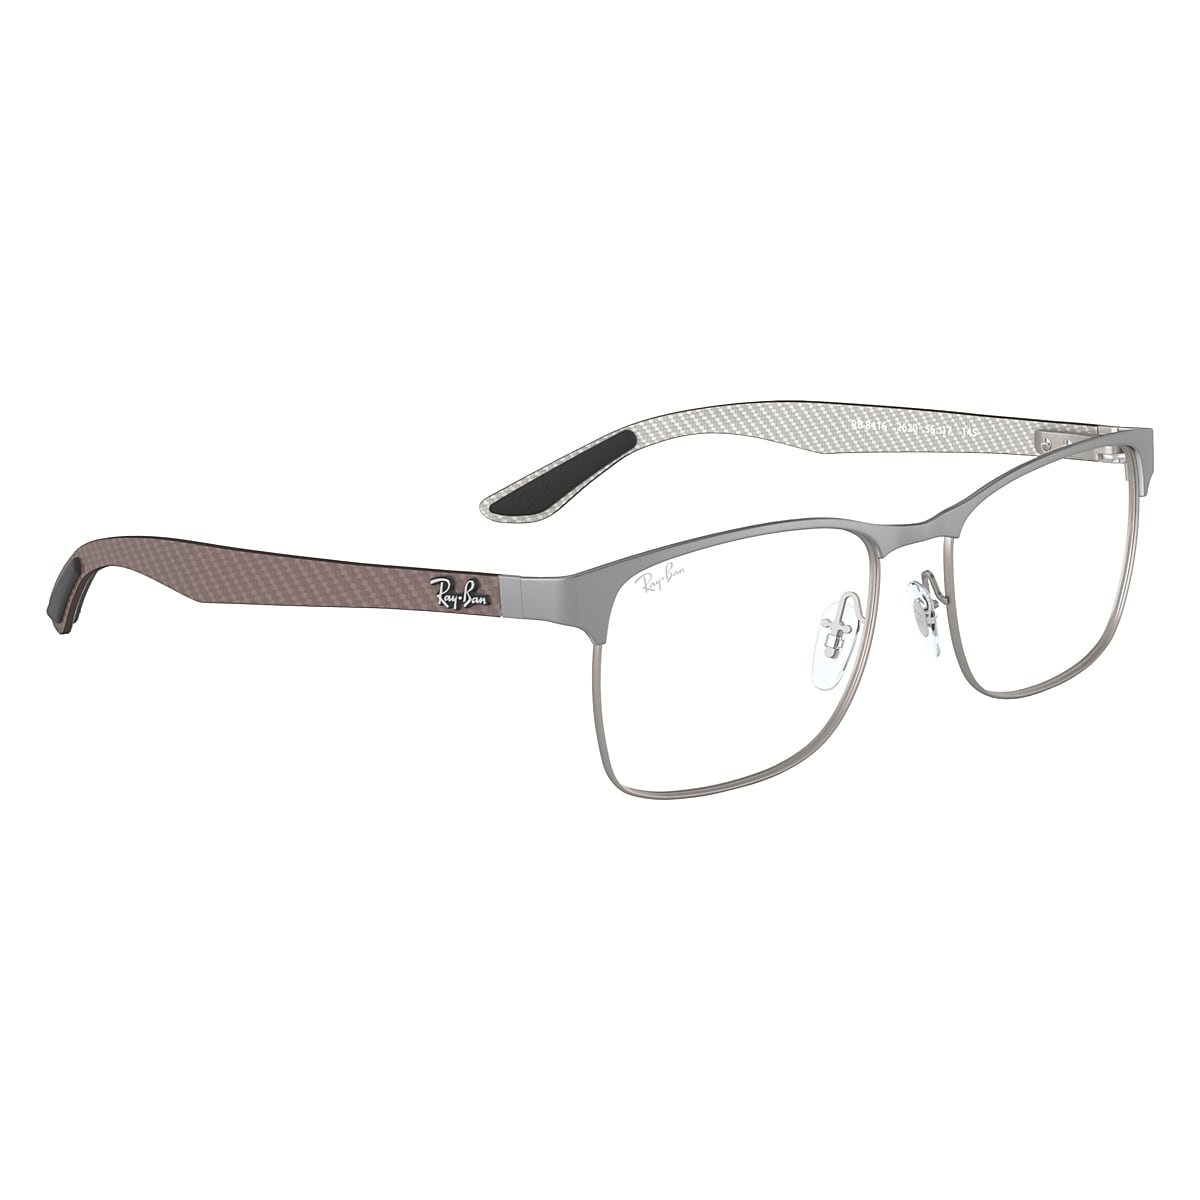 Rb8416 Optics Eyeglasses with Gunmetal Frame | Ray-Ban®